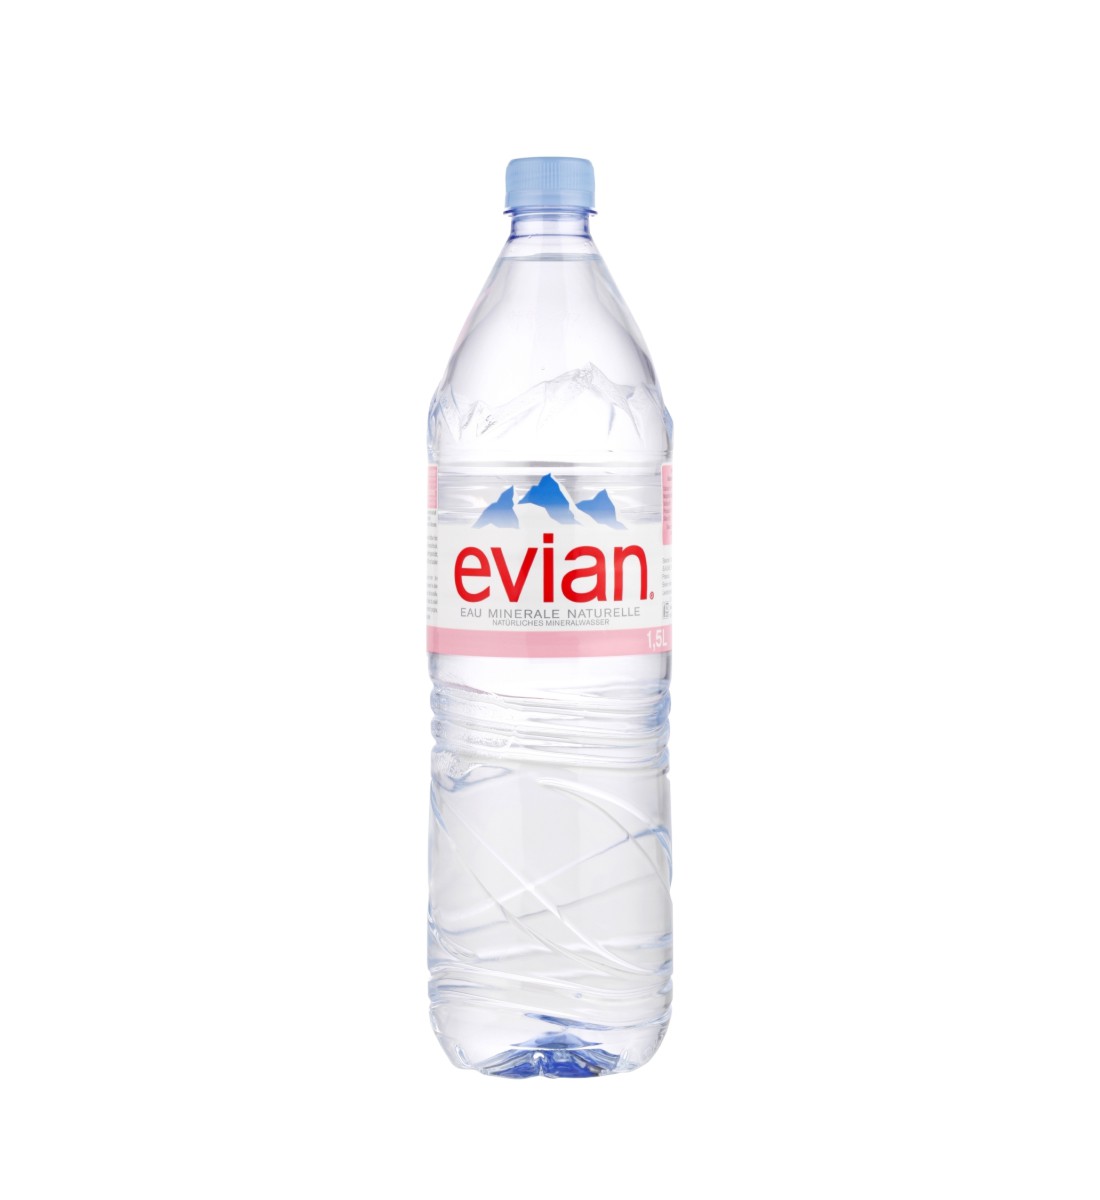 Evian apa minerala naturala plata 1.5L